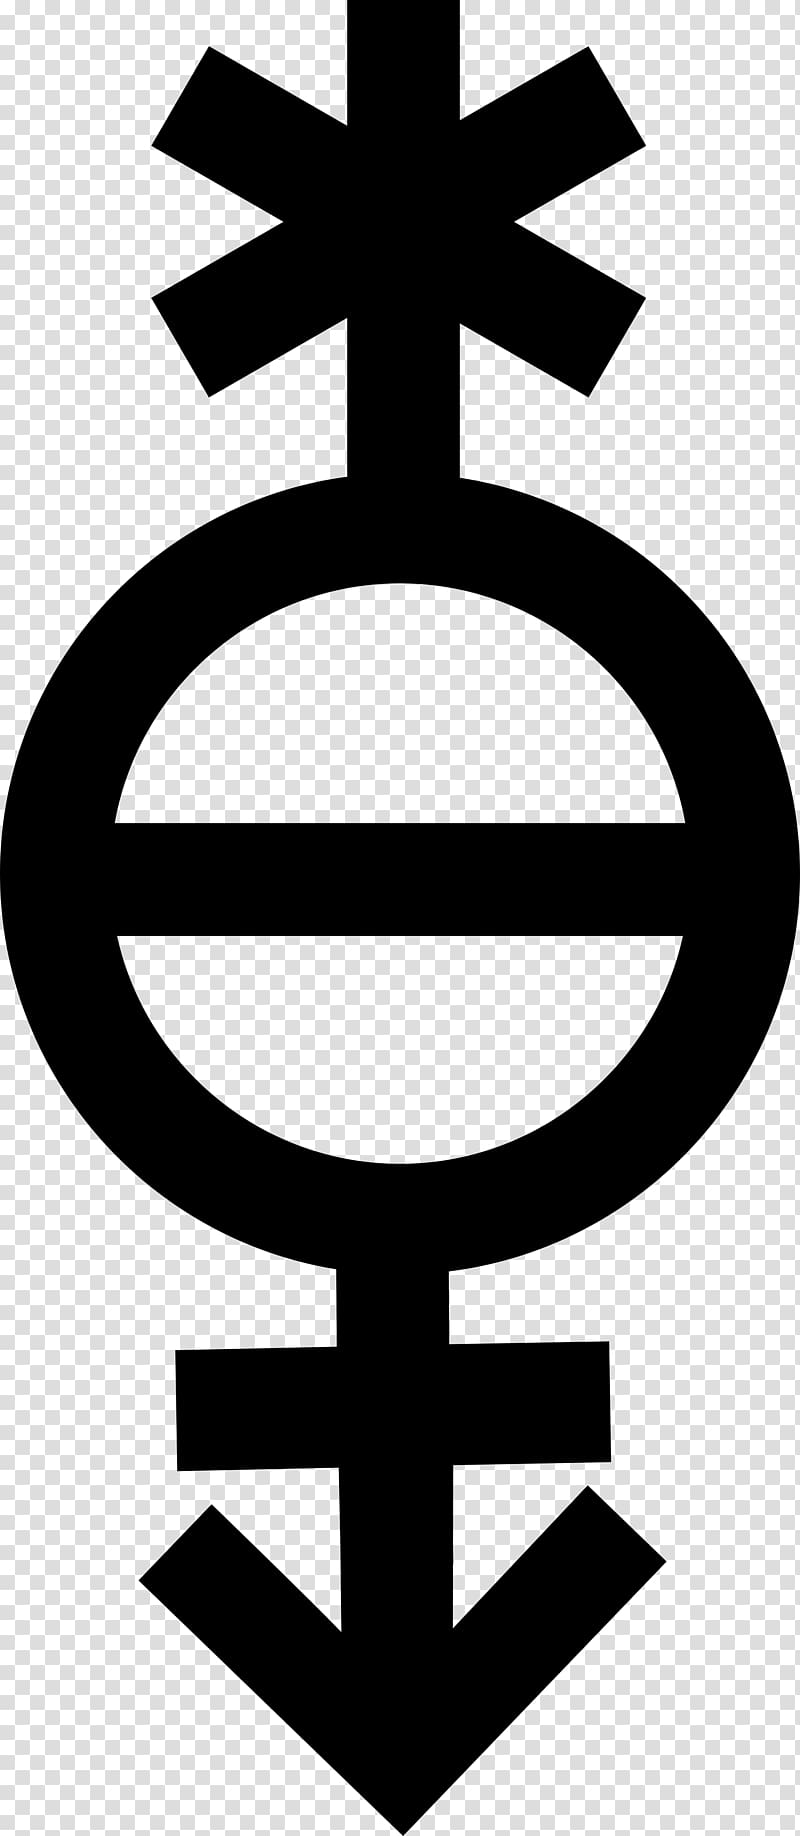 Lack of gender identities Gender symbol Gender binary Gender identity, symbols transparent background PNG clipart